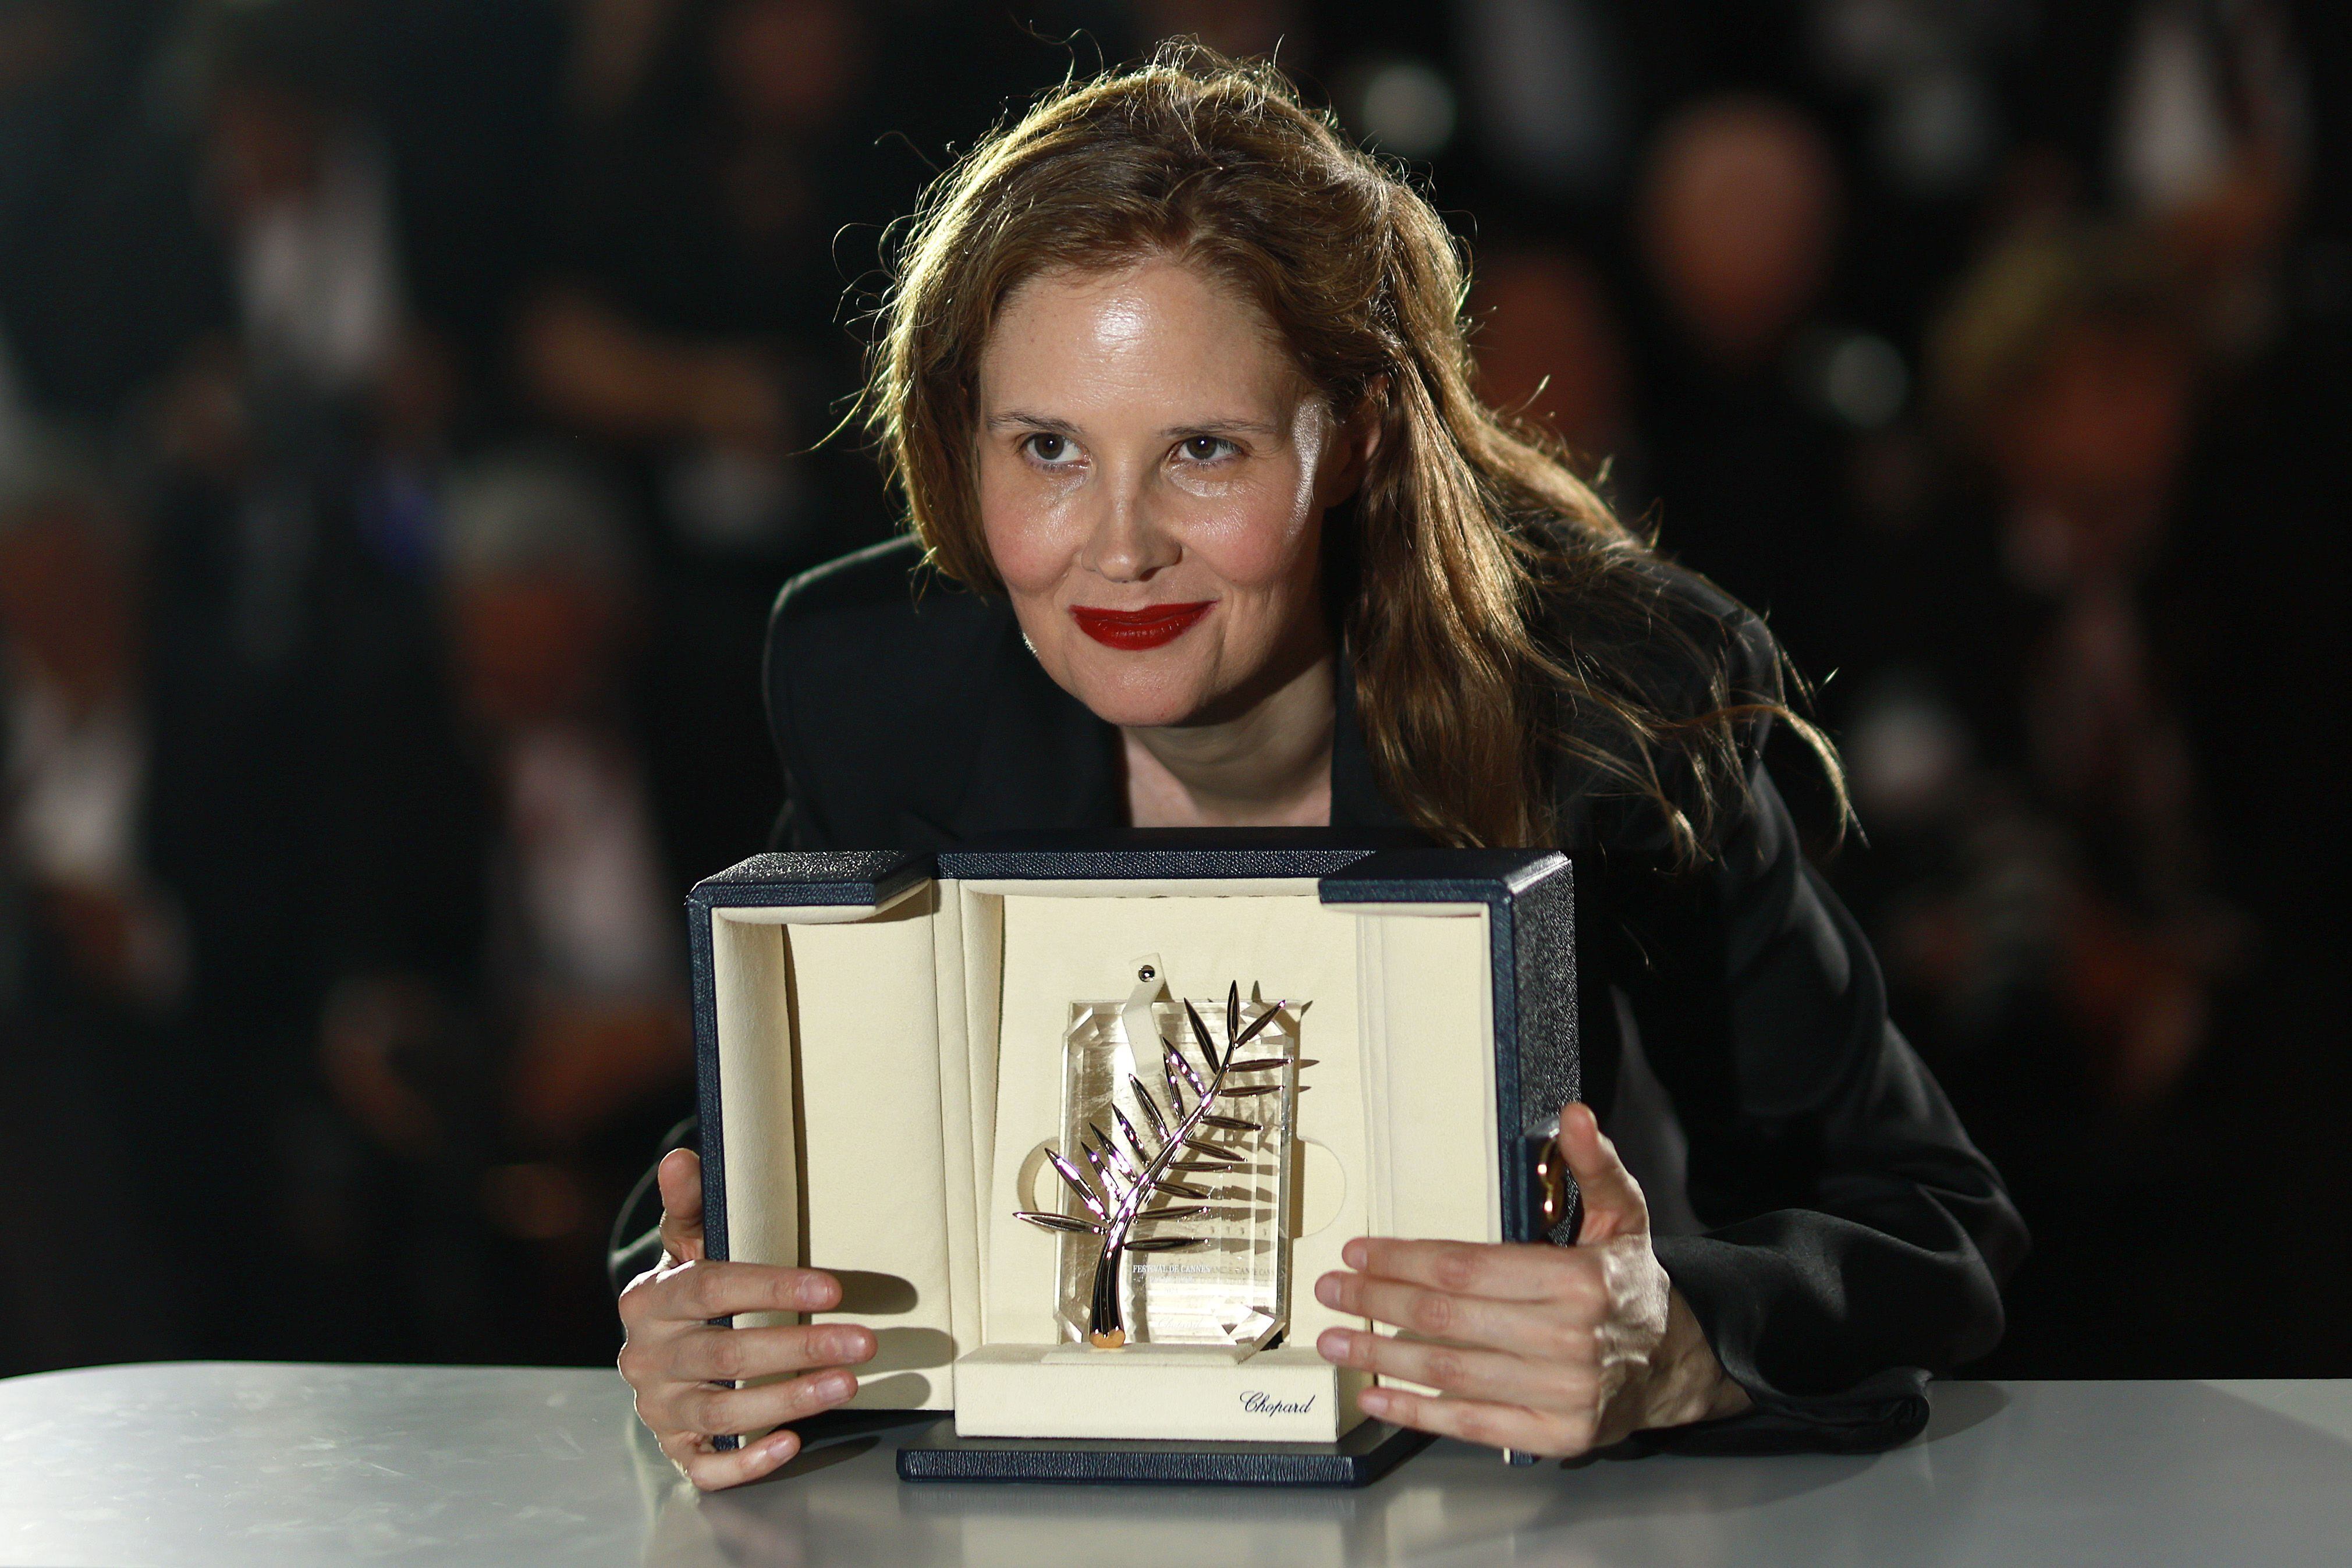 La directora de 'Anatomía de una caída', Justine Triet, posa con la Palma de Oro en el festival de Cannes. EFE/EPA/GUILLAUME HORCAJUELO